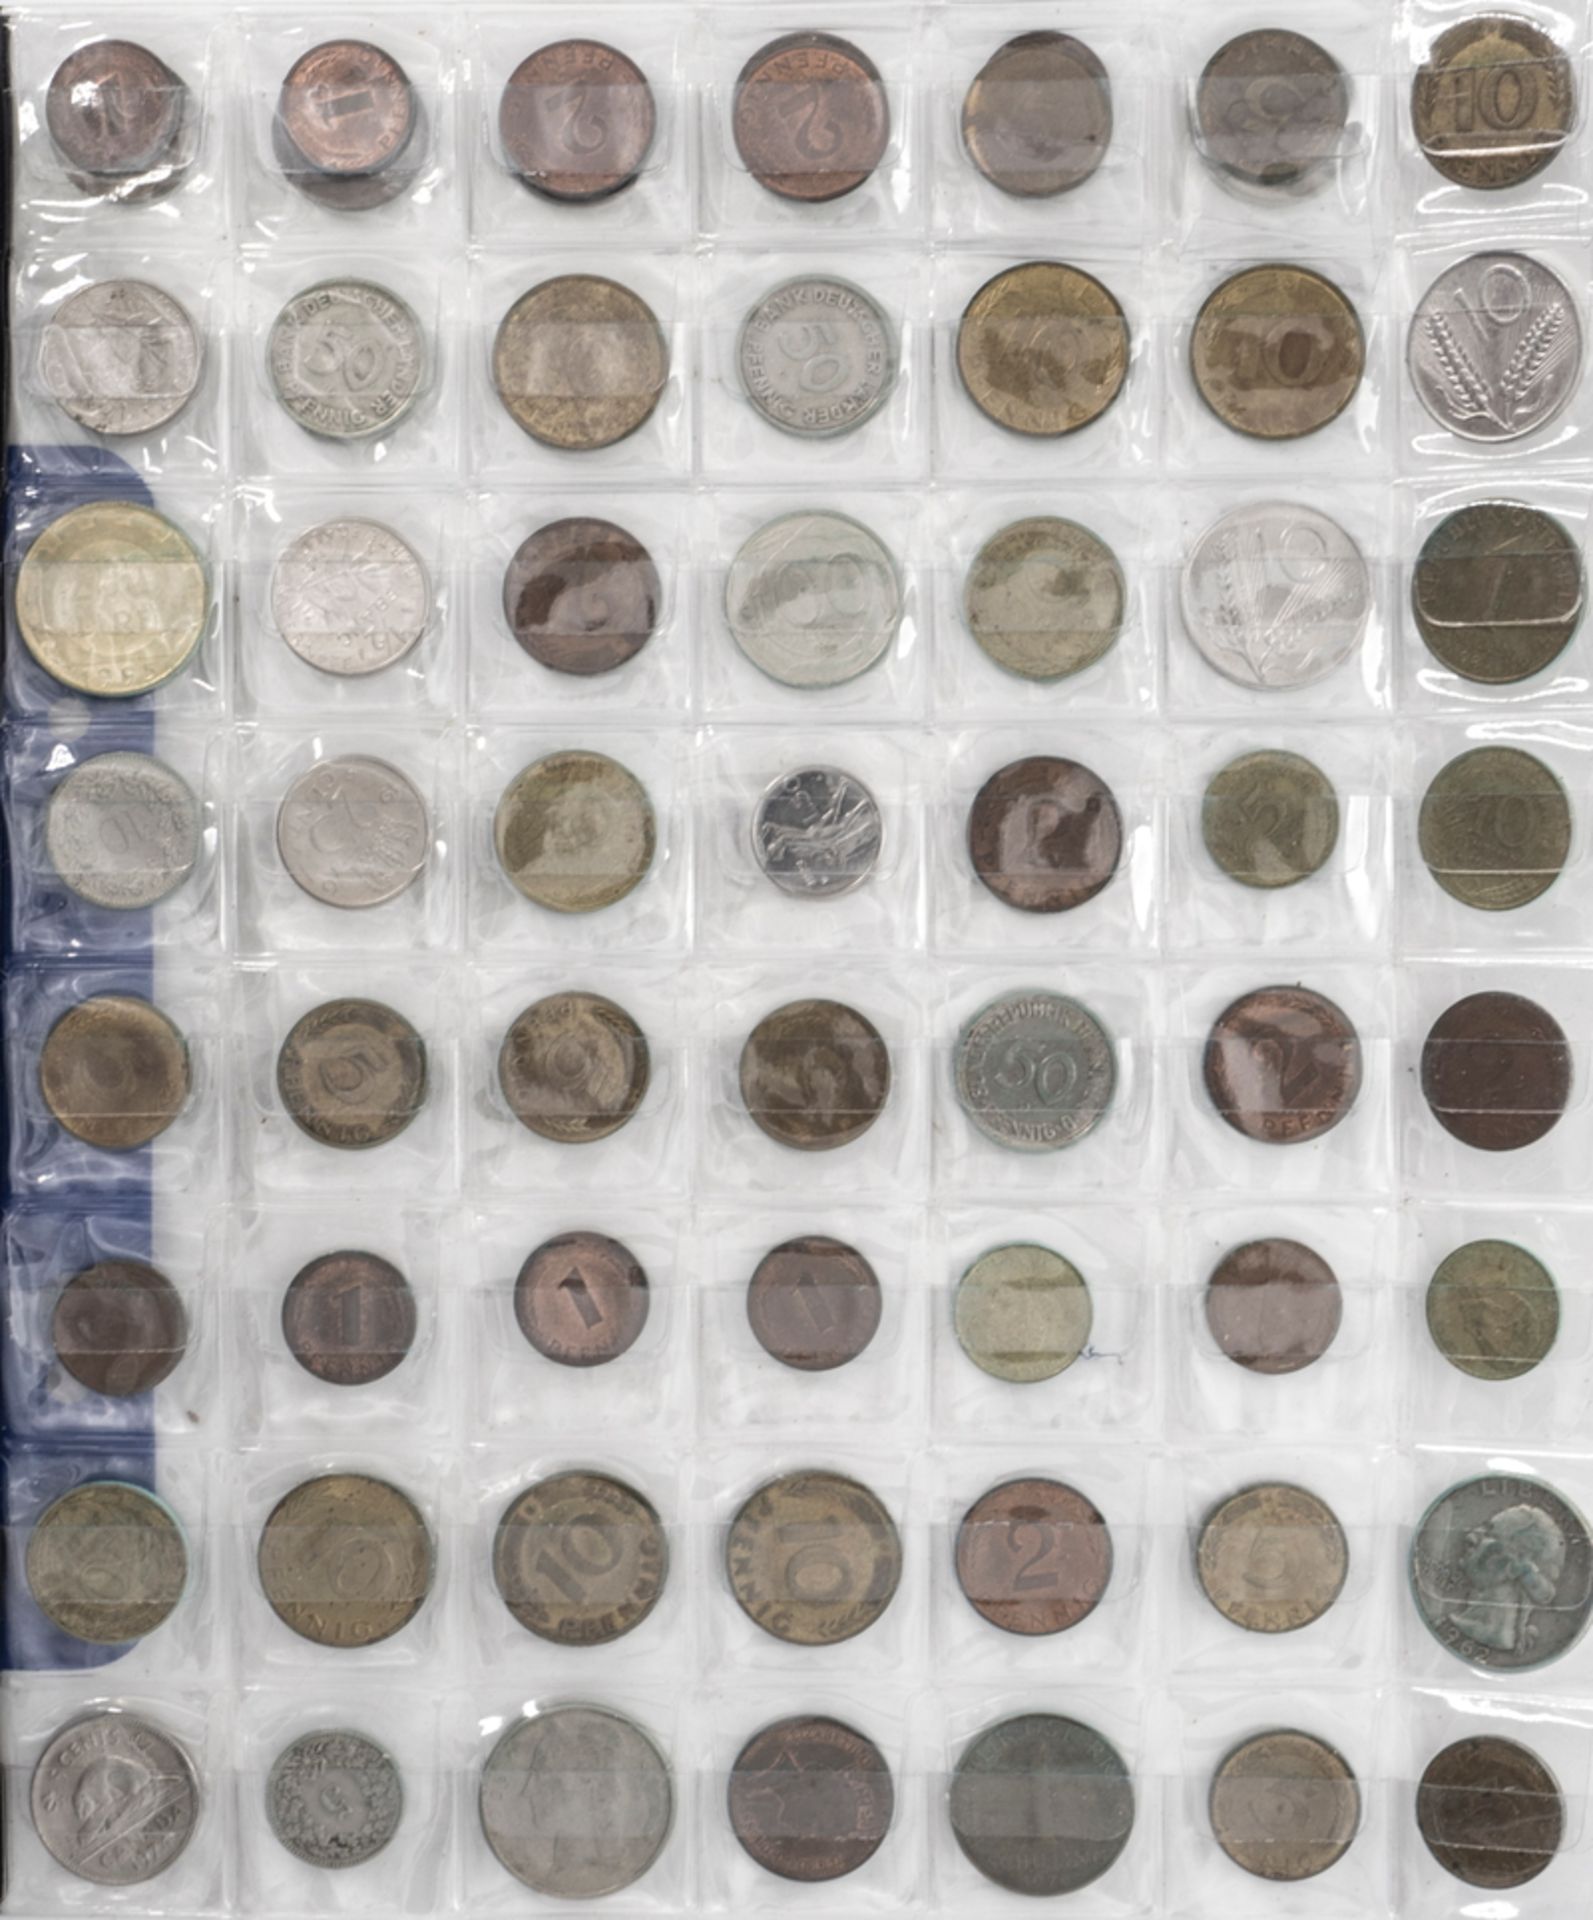 Lot Münzen aus aller Welt. Über 180 Münzen. - Bild 3 aus 3